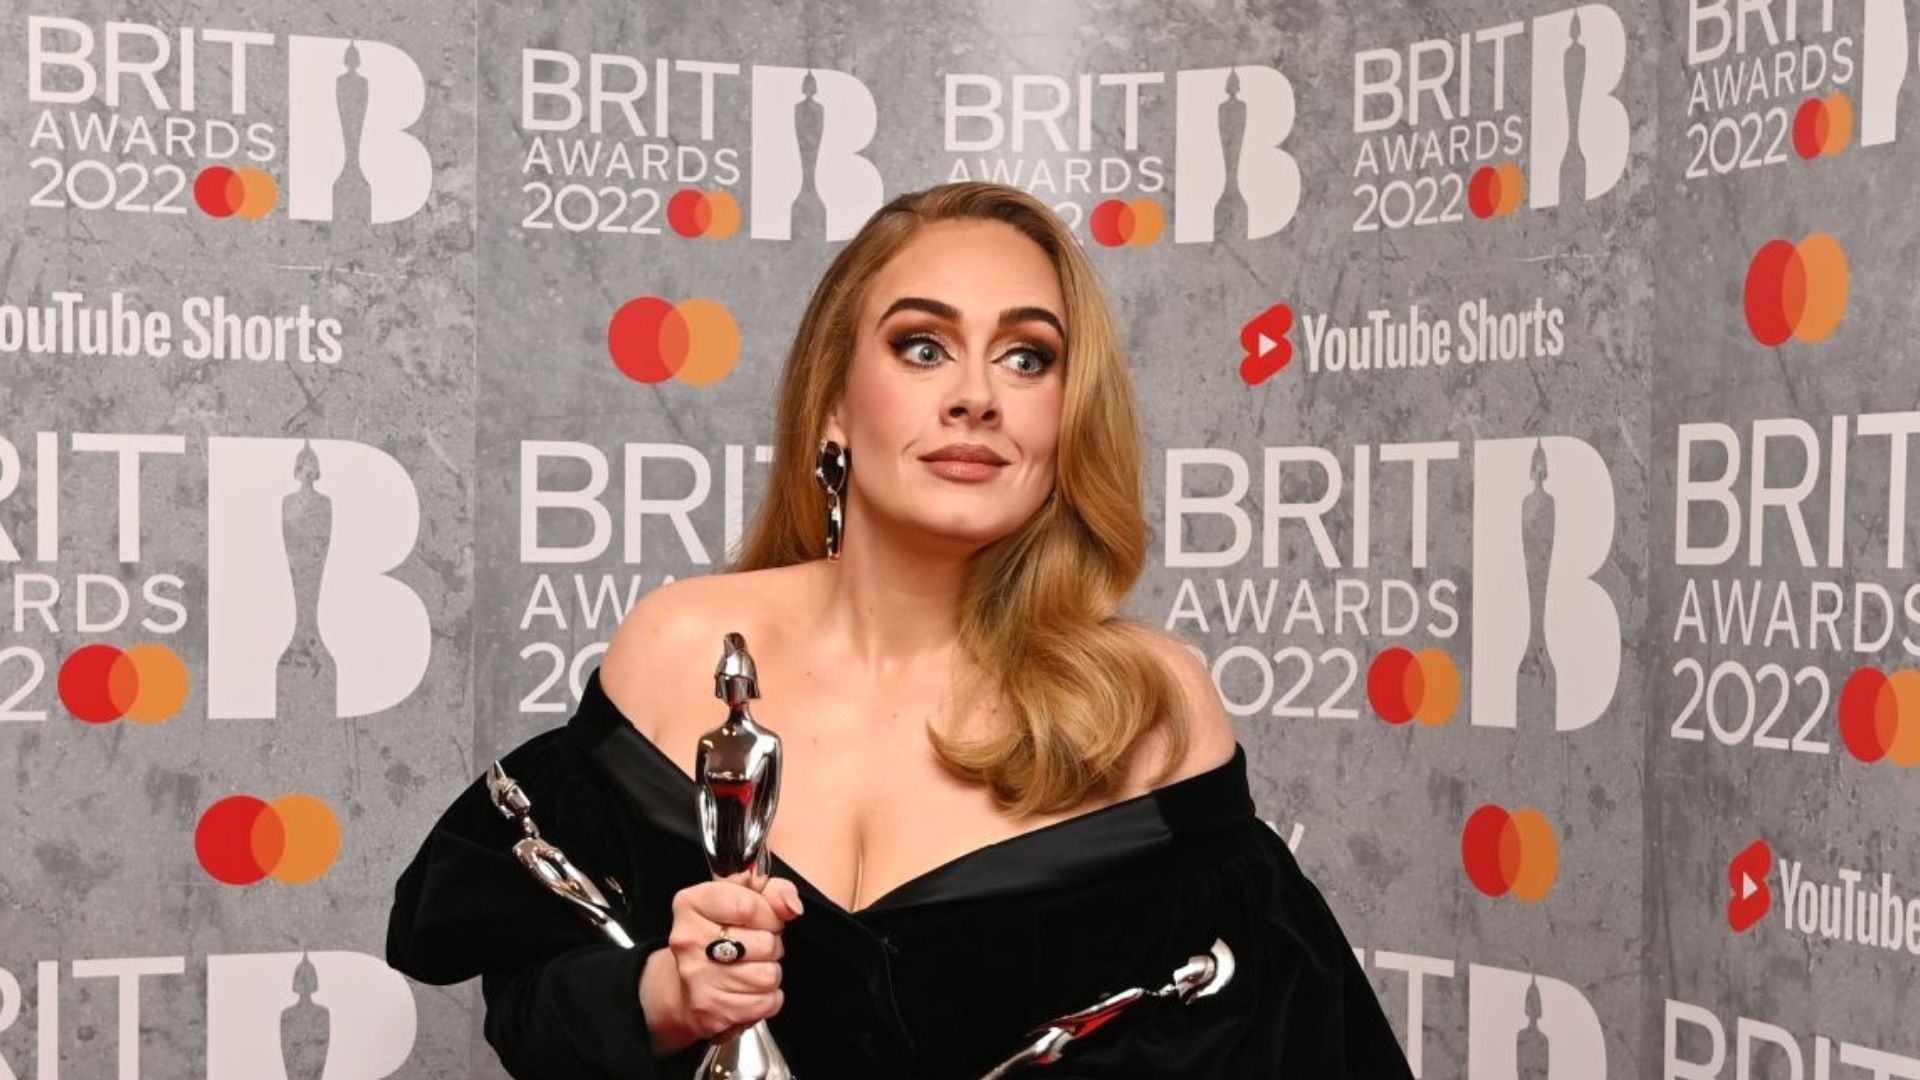 Brit Awards 2022: Los premios más importantes de la industria musical británica han dado a conocer a  sus ganadores